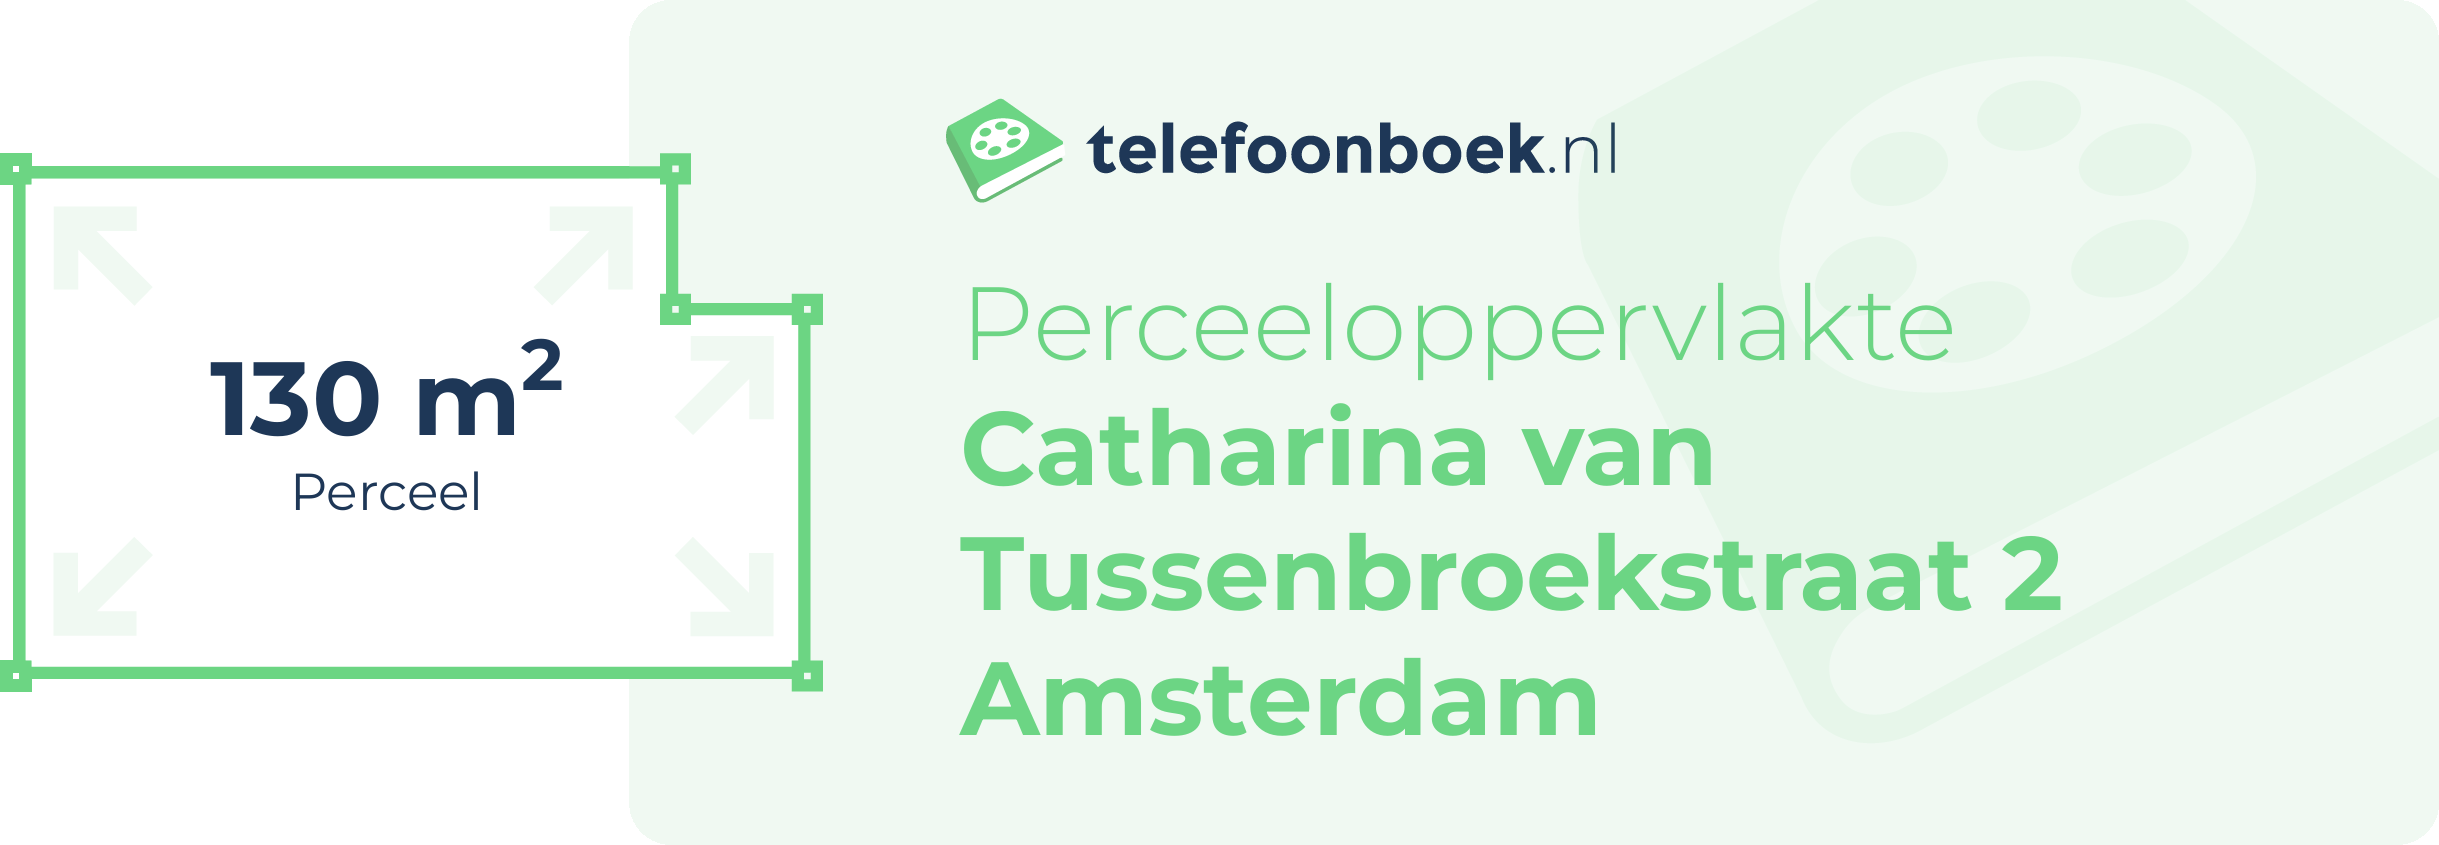 Perceeloppervlakte Catharina Van Tussenbroekstraat 2 Amsterdam